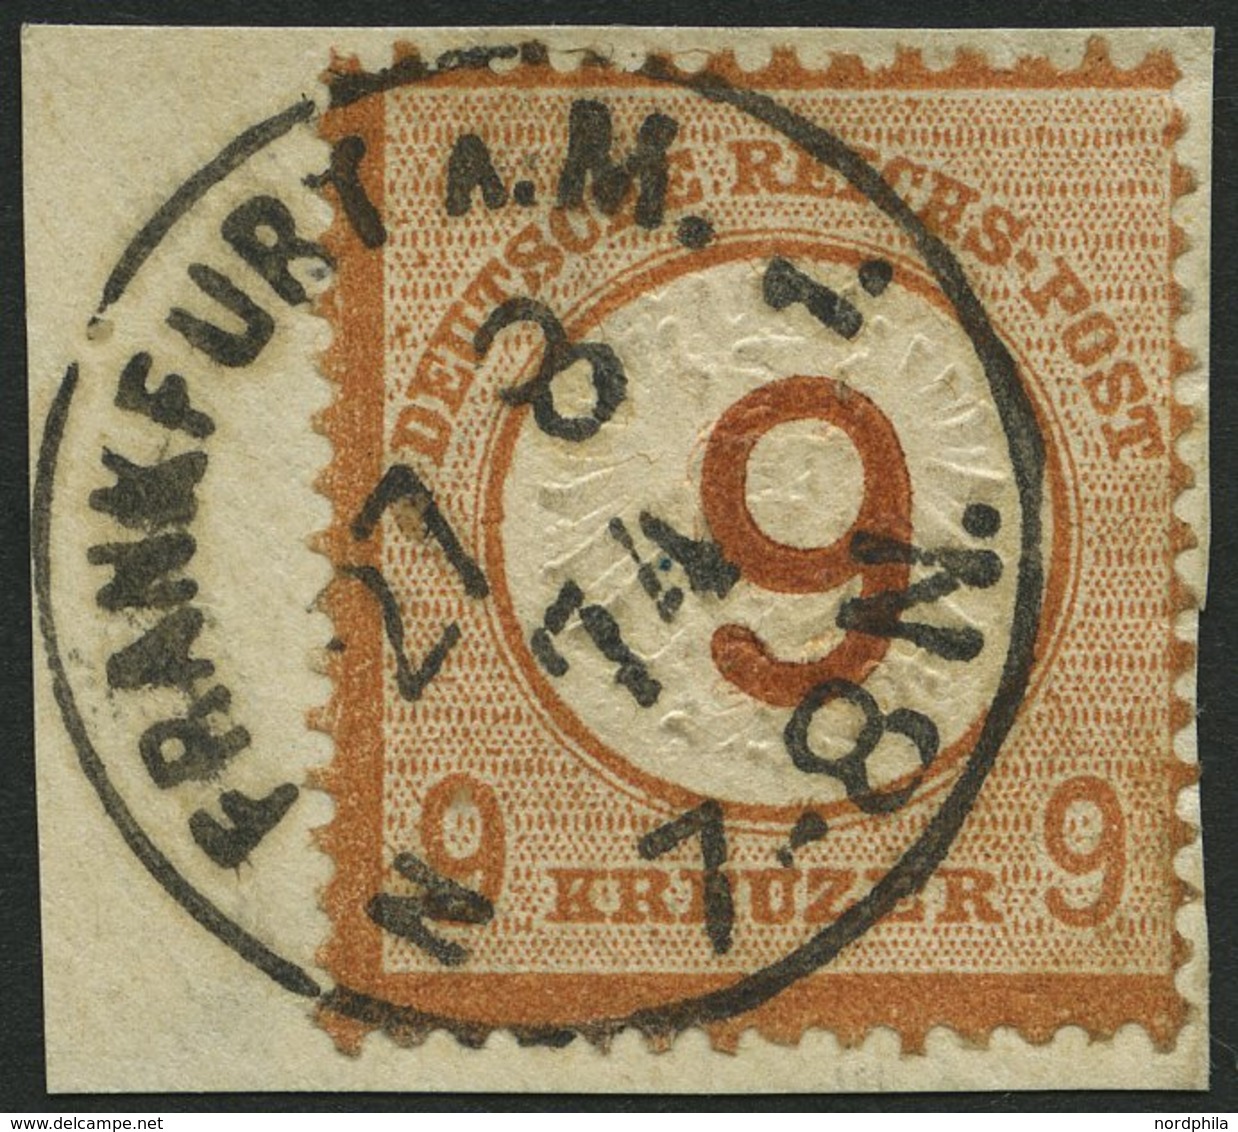 Dt. Reich 30 BrfStk, 1874, 9 Auf 9 Kr. Braunorange, K1 FRANKFURT A.M., Prachtbriefstück, Fotoattest Brugger, Mi. (600.-) - Usados